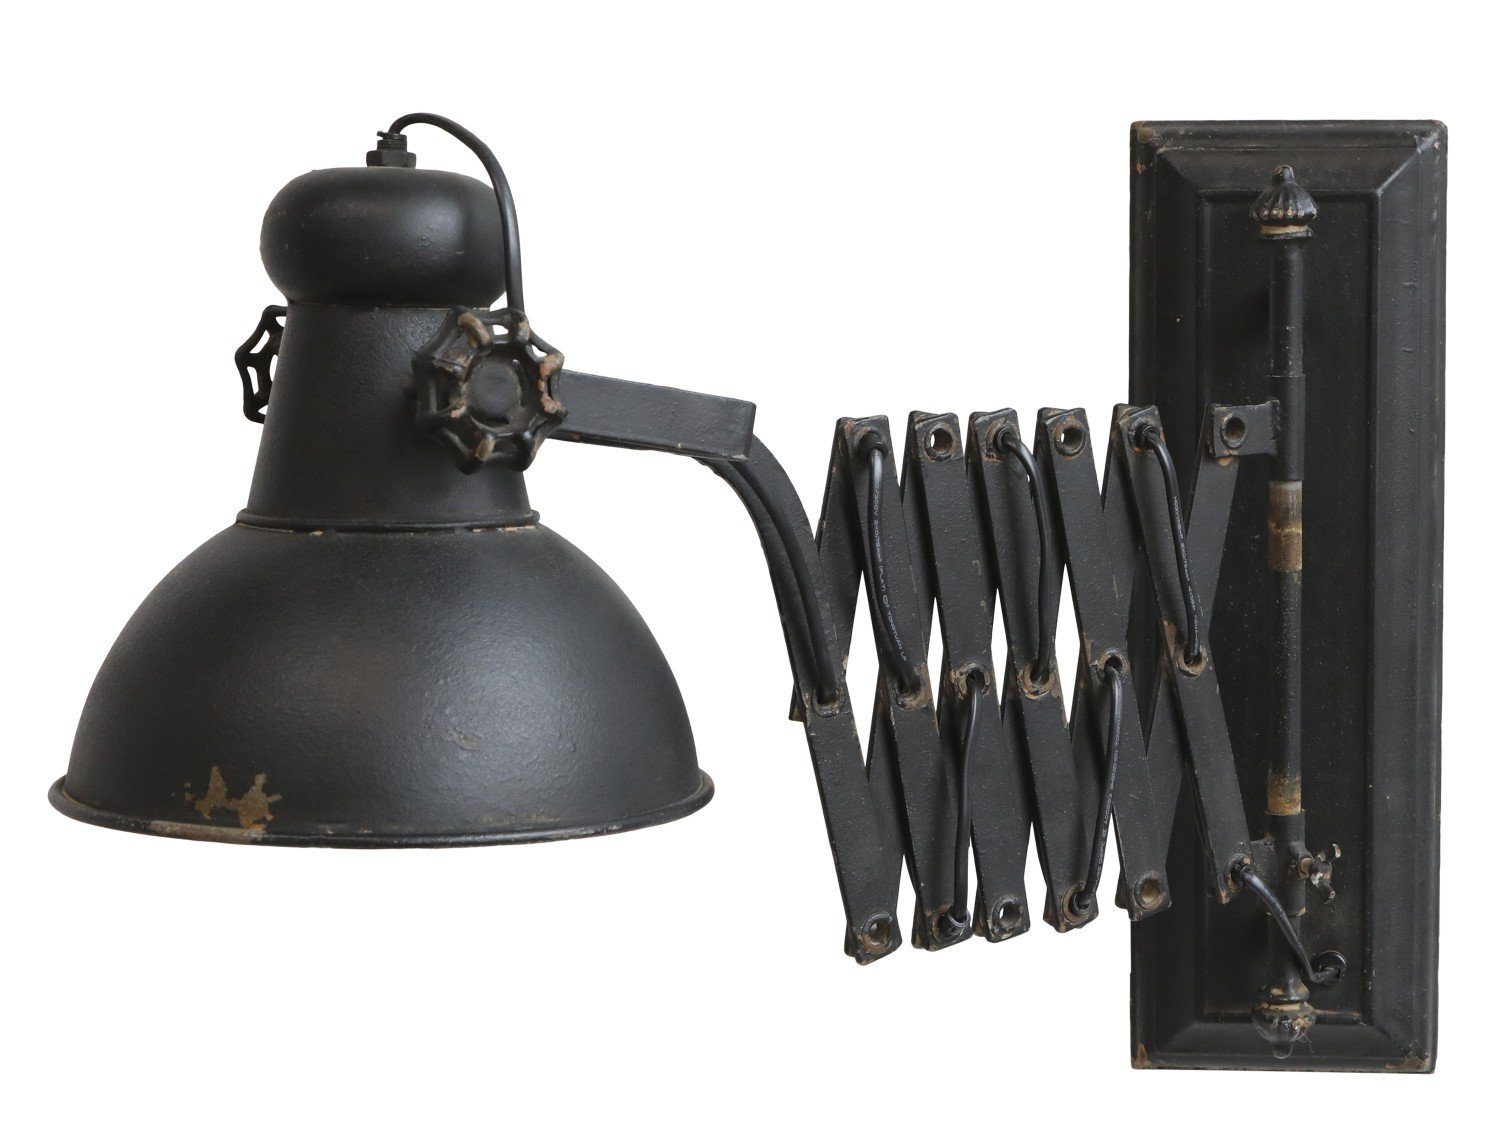 Chic Antique Wandleuchte Factory Lampe für die Wand L45-105 cm antique schwarz